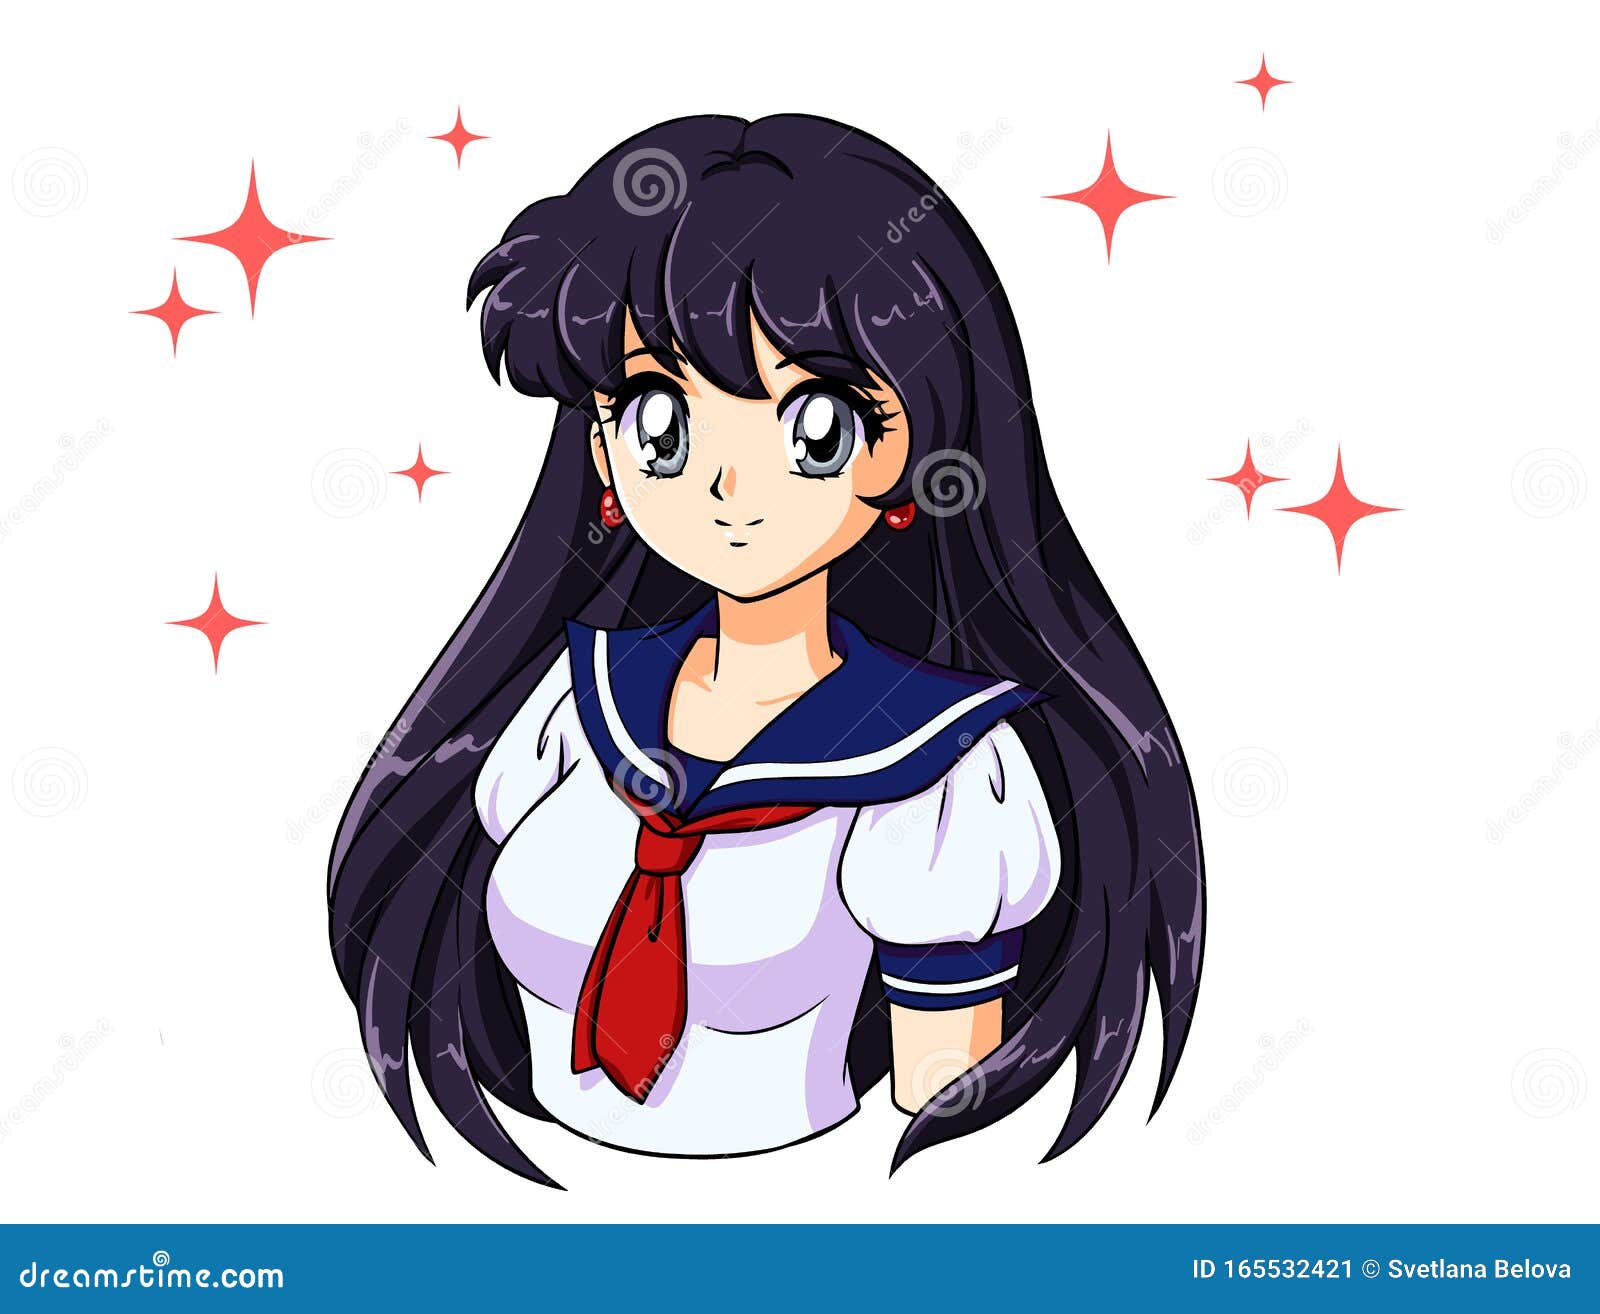 Anime Girl Stock Illustrations – 21,692 Anime Girl Stock Illustrations,  Vectors & Clipart - Dreamstime